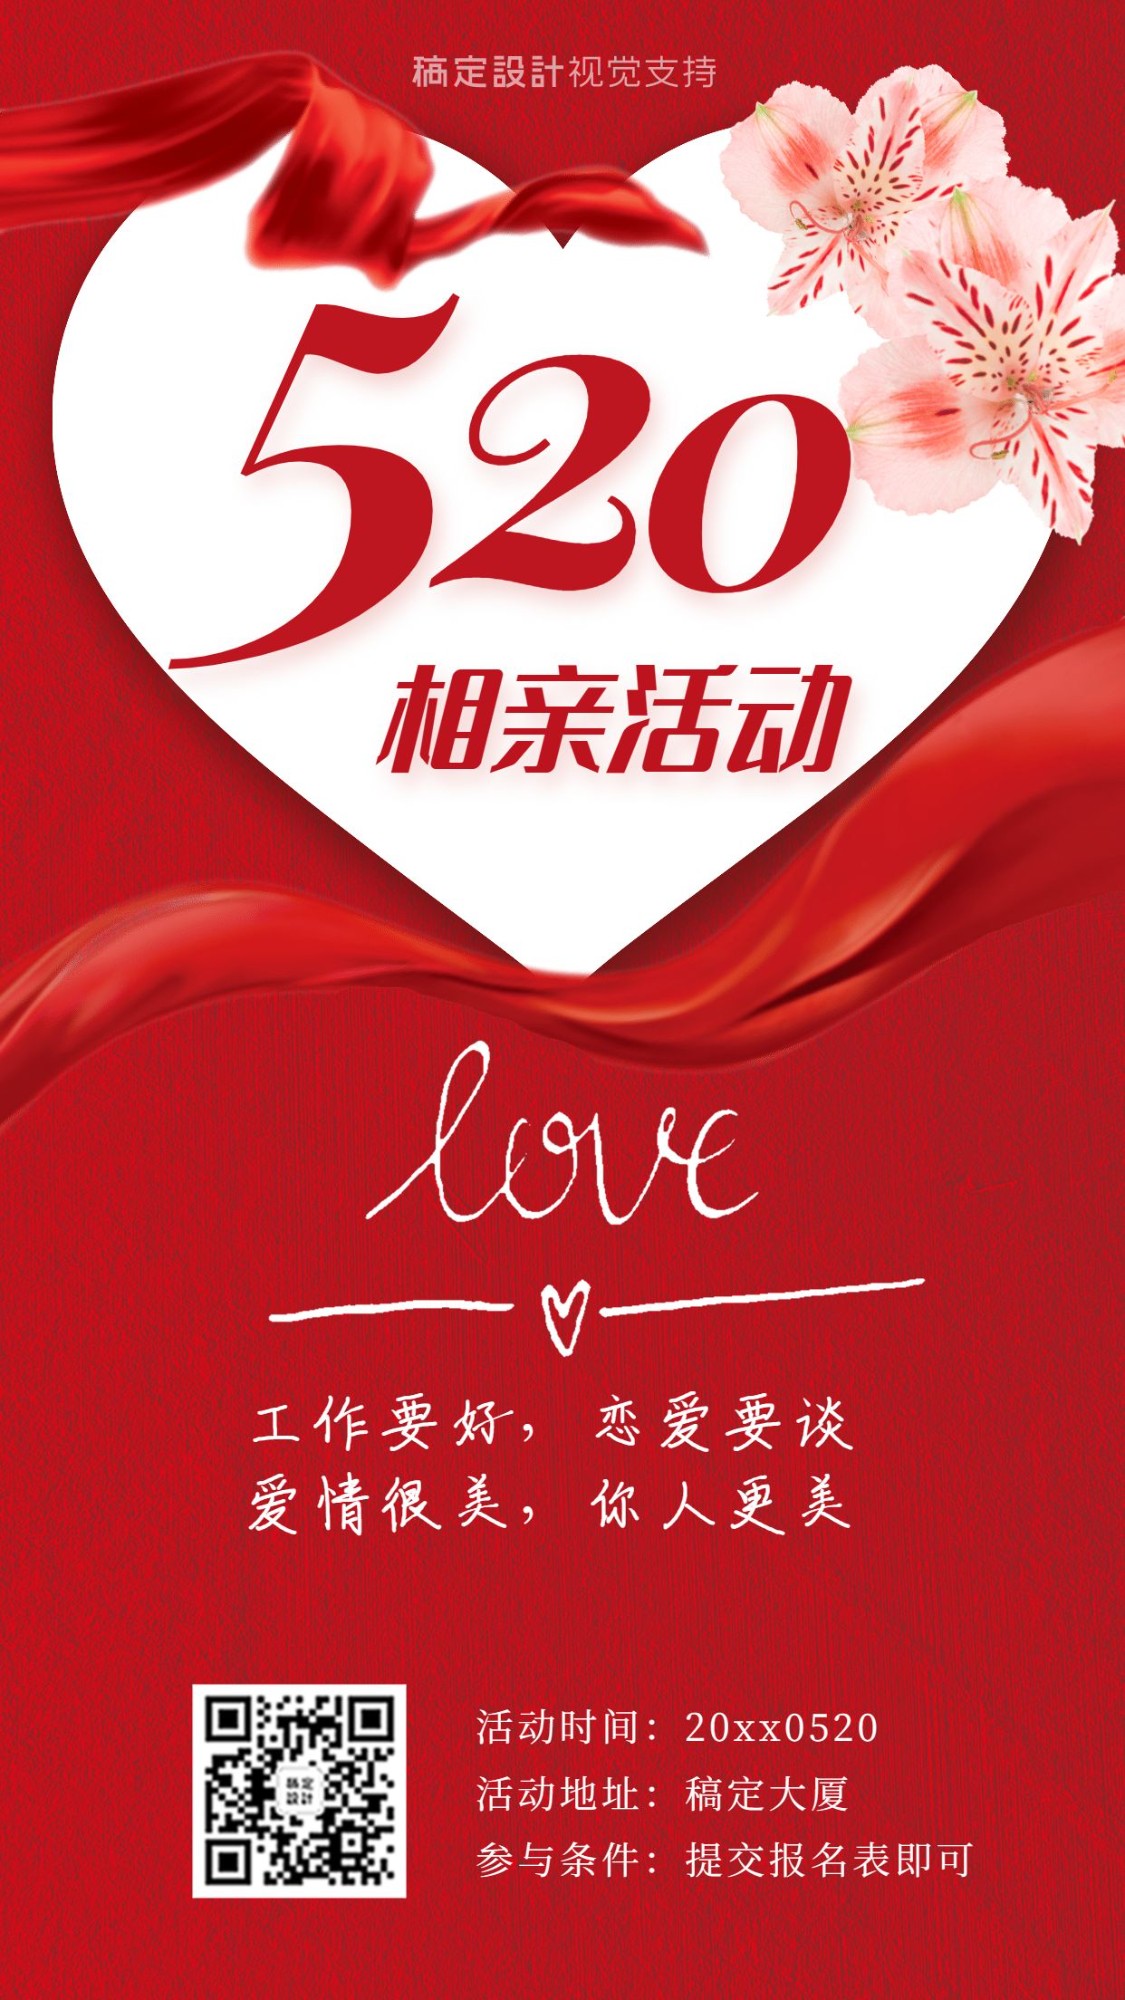 520情人节婚恋相亲活动宣传海报预览效果